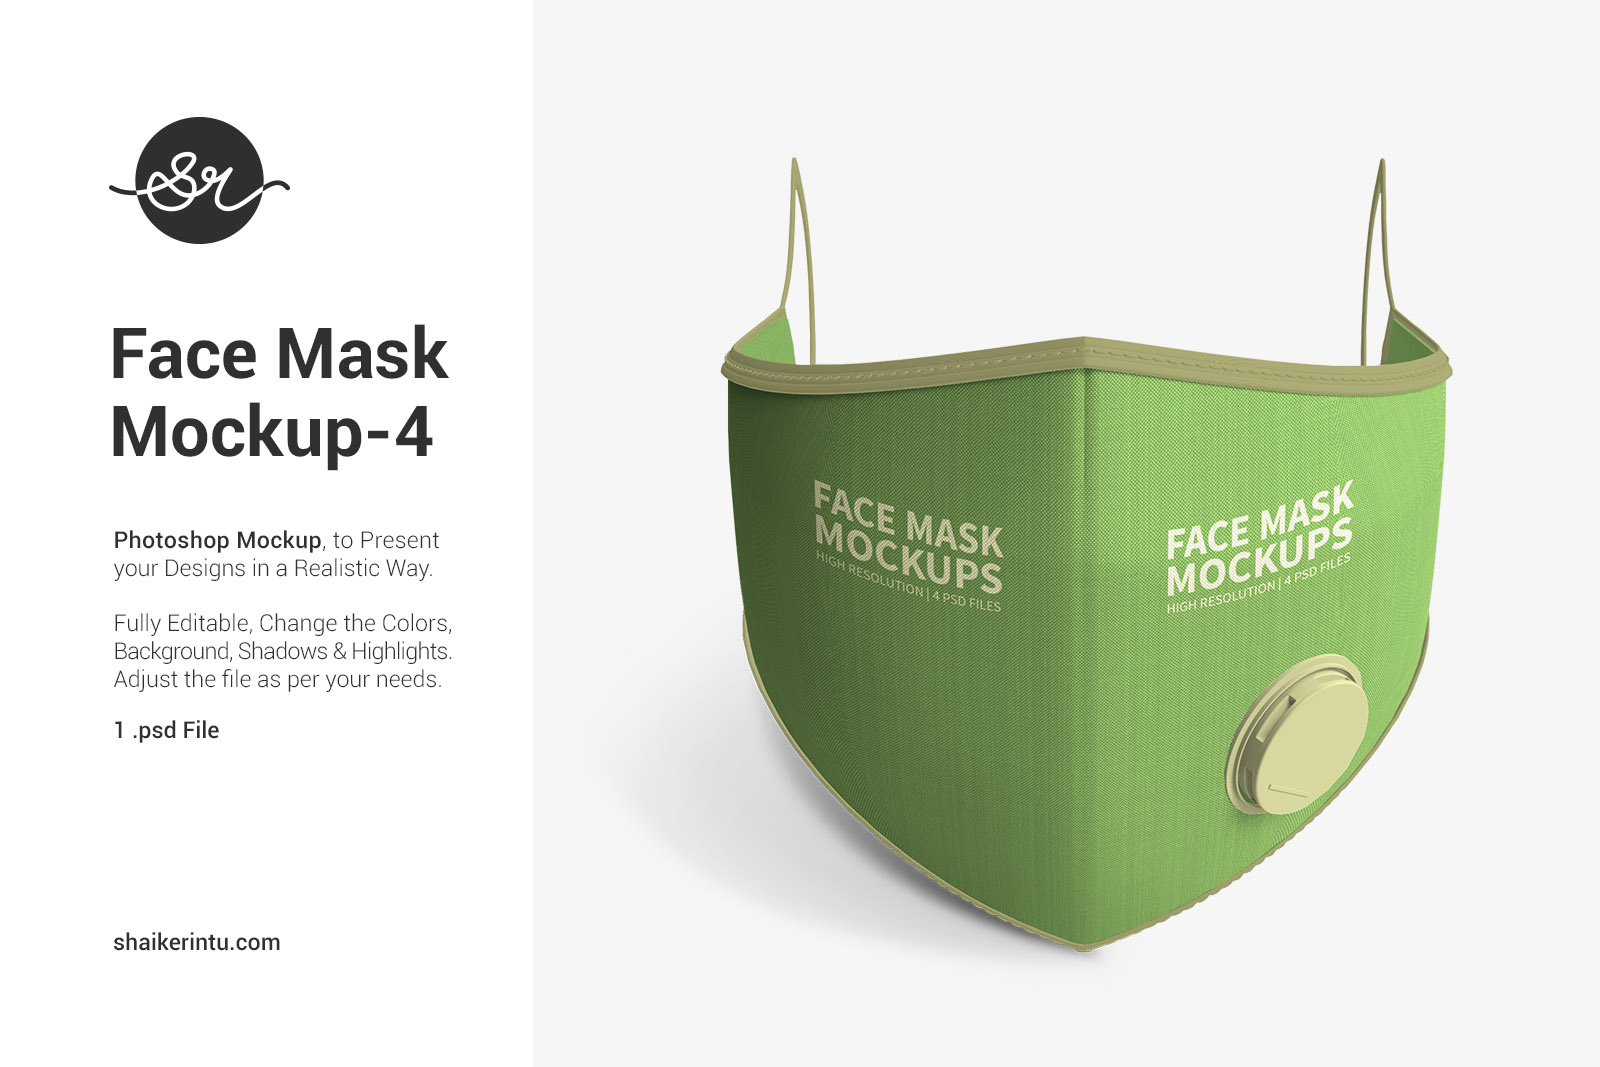 Face Mask Mockups